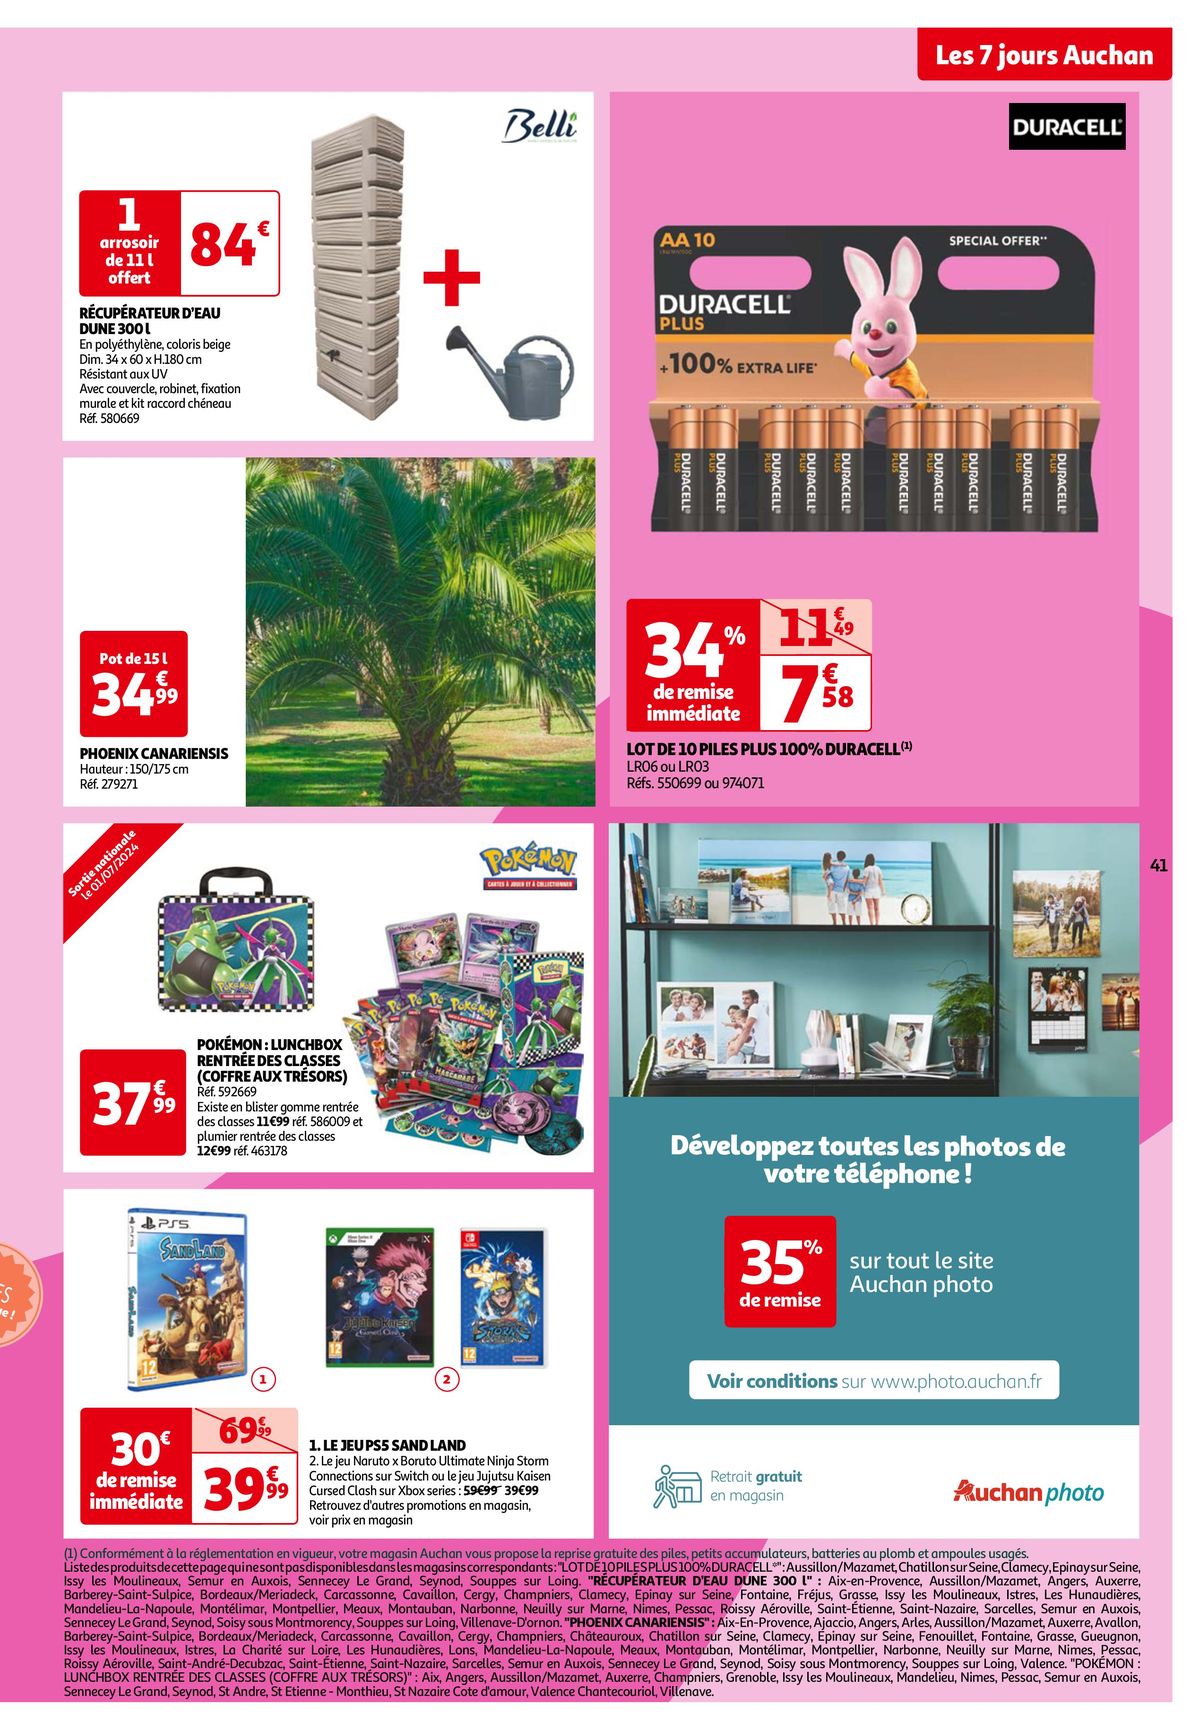 Catalogue Les 7 jours Auchan, c'est maintenant !, page 00041